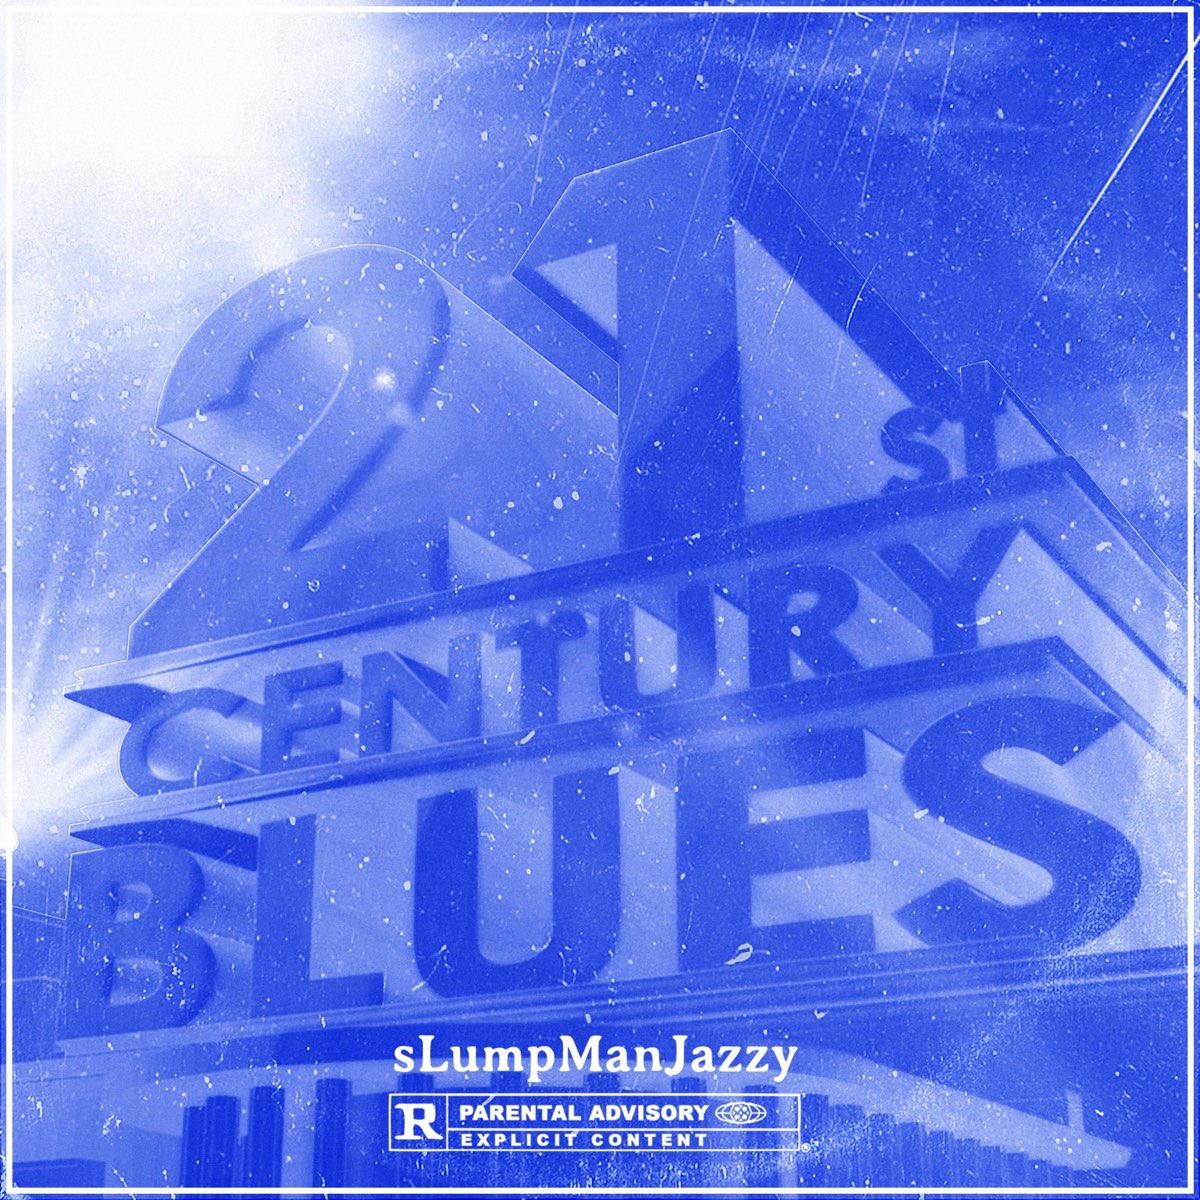 Century blue. 21st Century Blues. My 21st Century Blues.